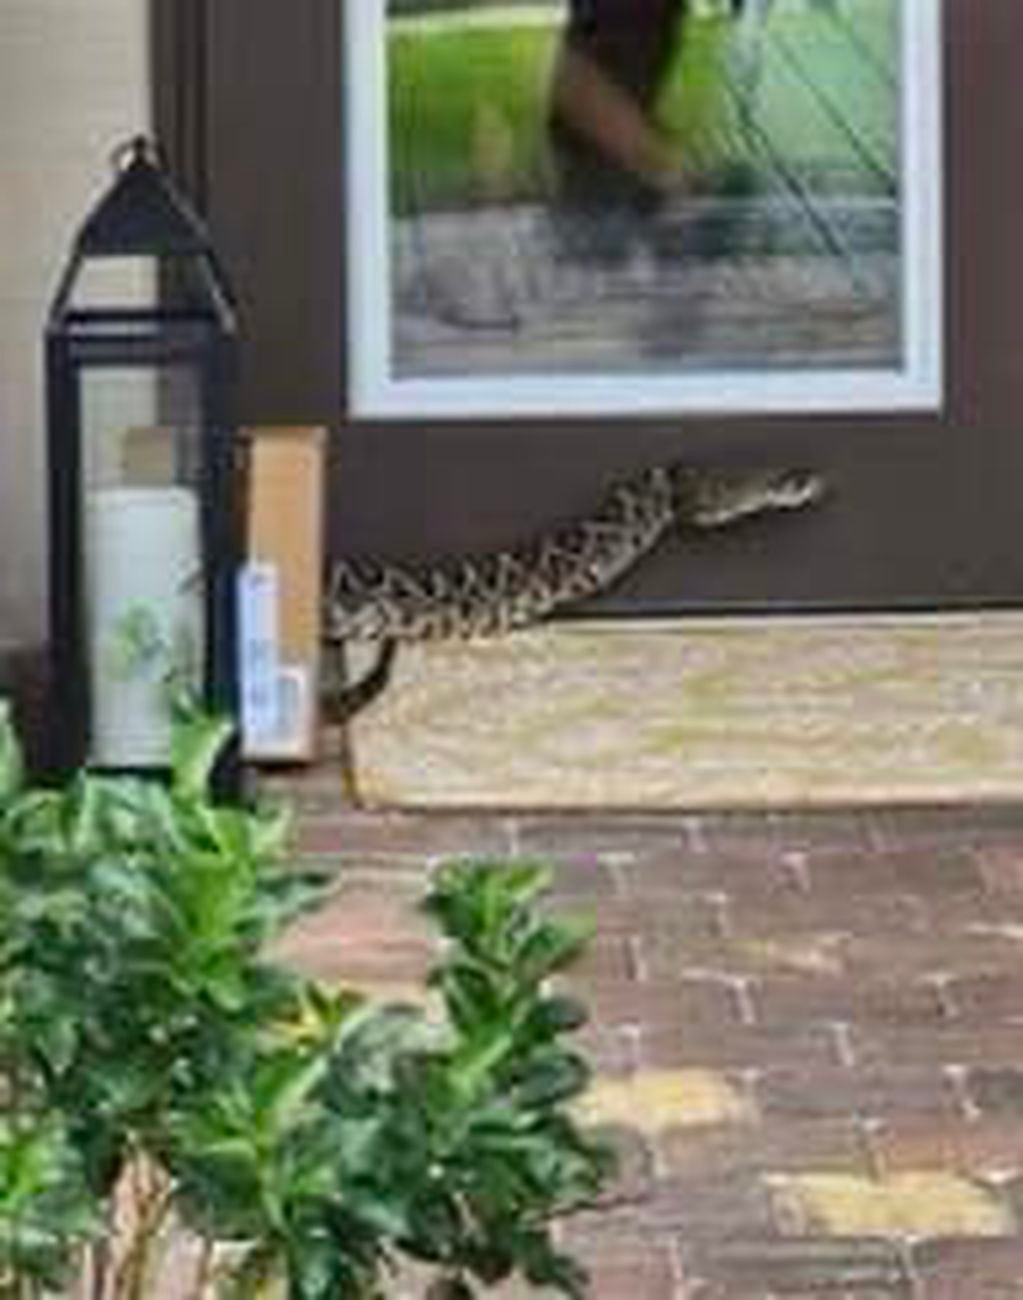 La serpiente se encontraba en la puerta de entrada de la casa